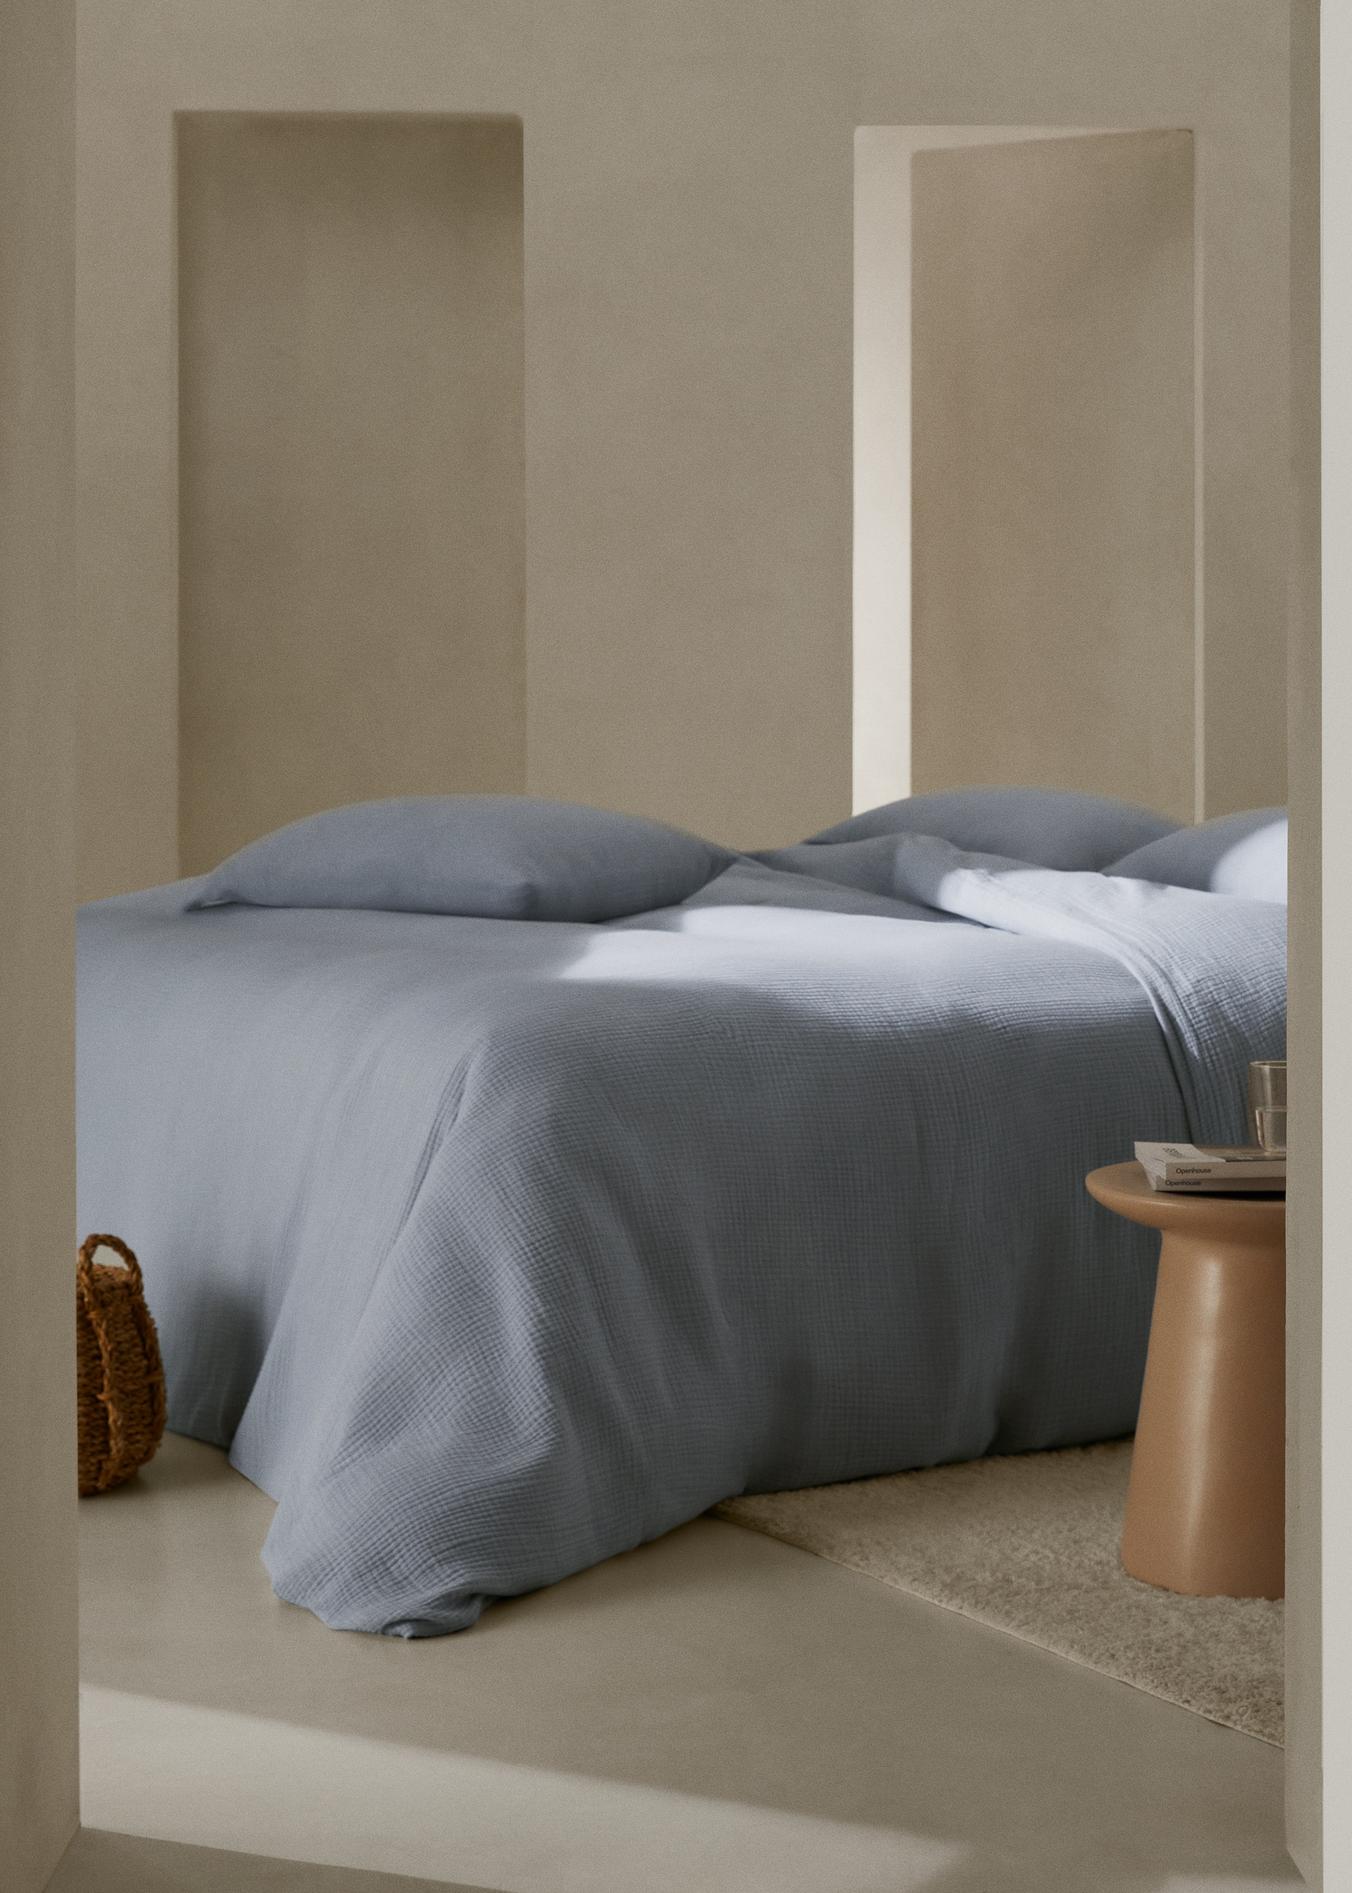 Bettbezug aus Baumwoll-Gaze für 150 cm Bett für 69,95 CHF in MANGO